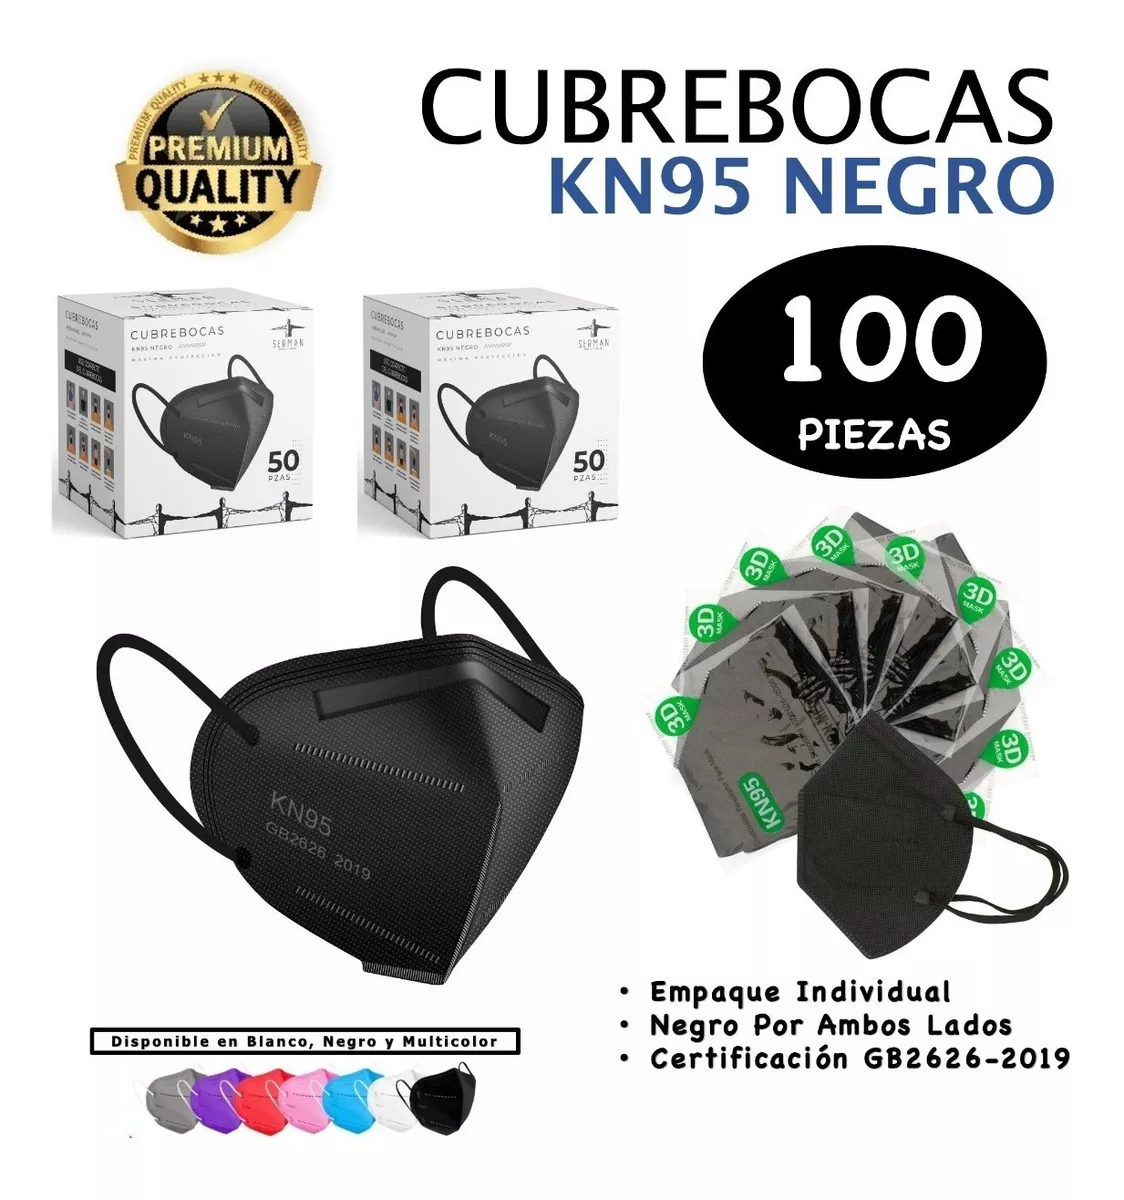 Cubrebocas Kn95 5 Capas Certificación Fda 100 Piezas 